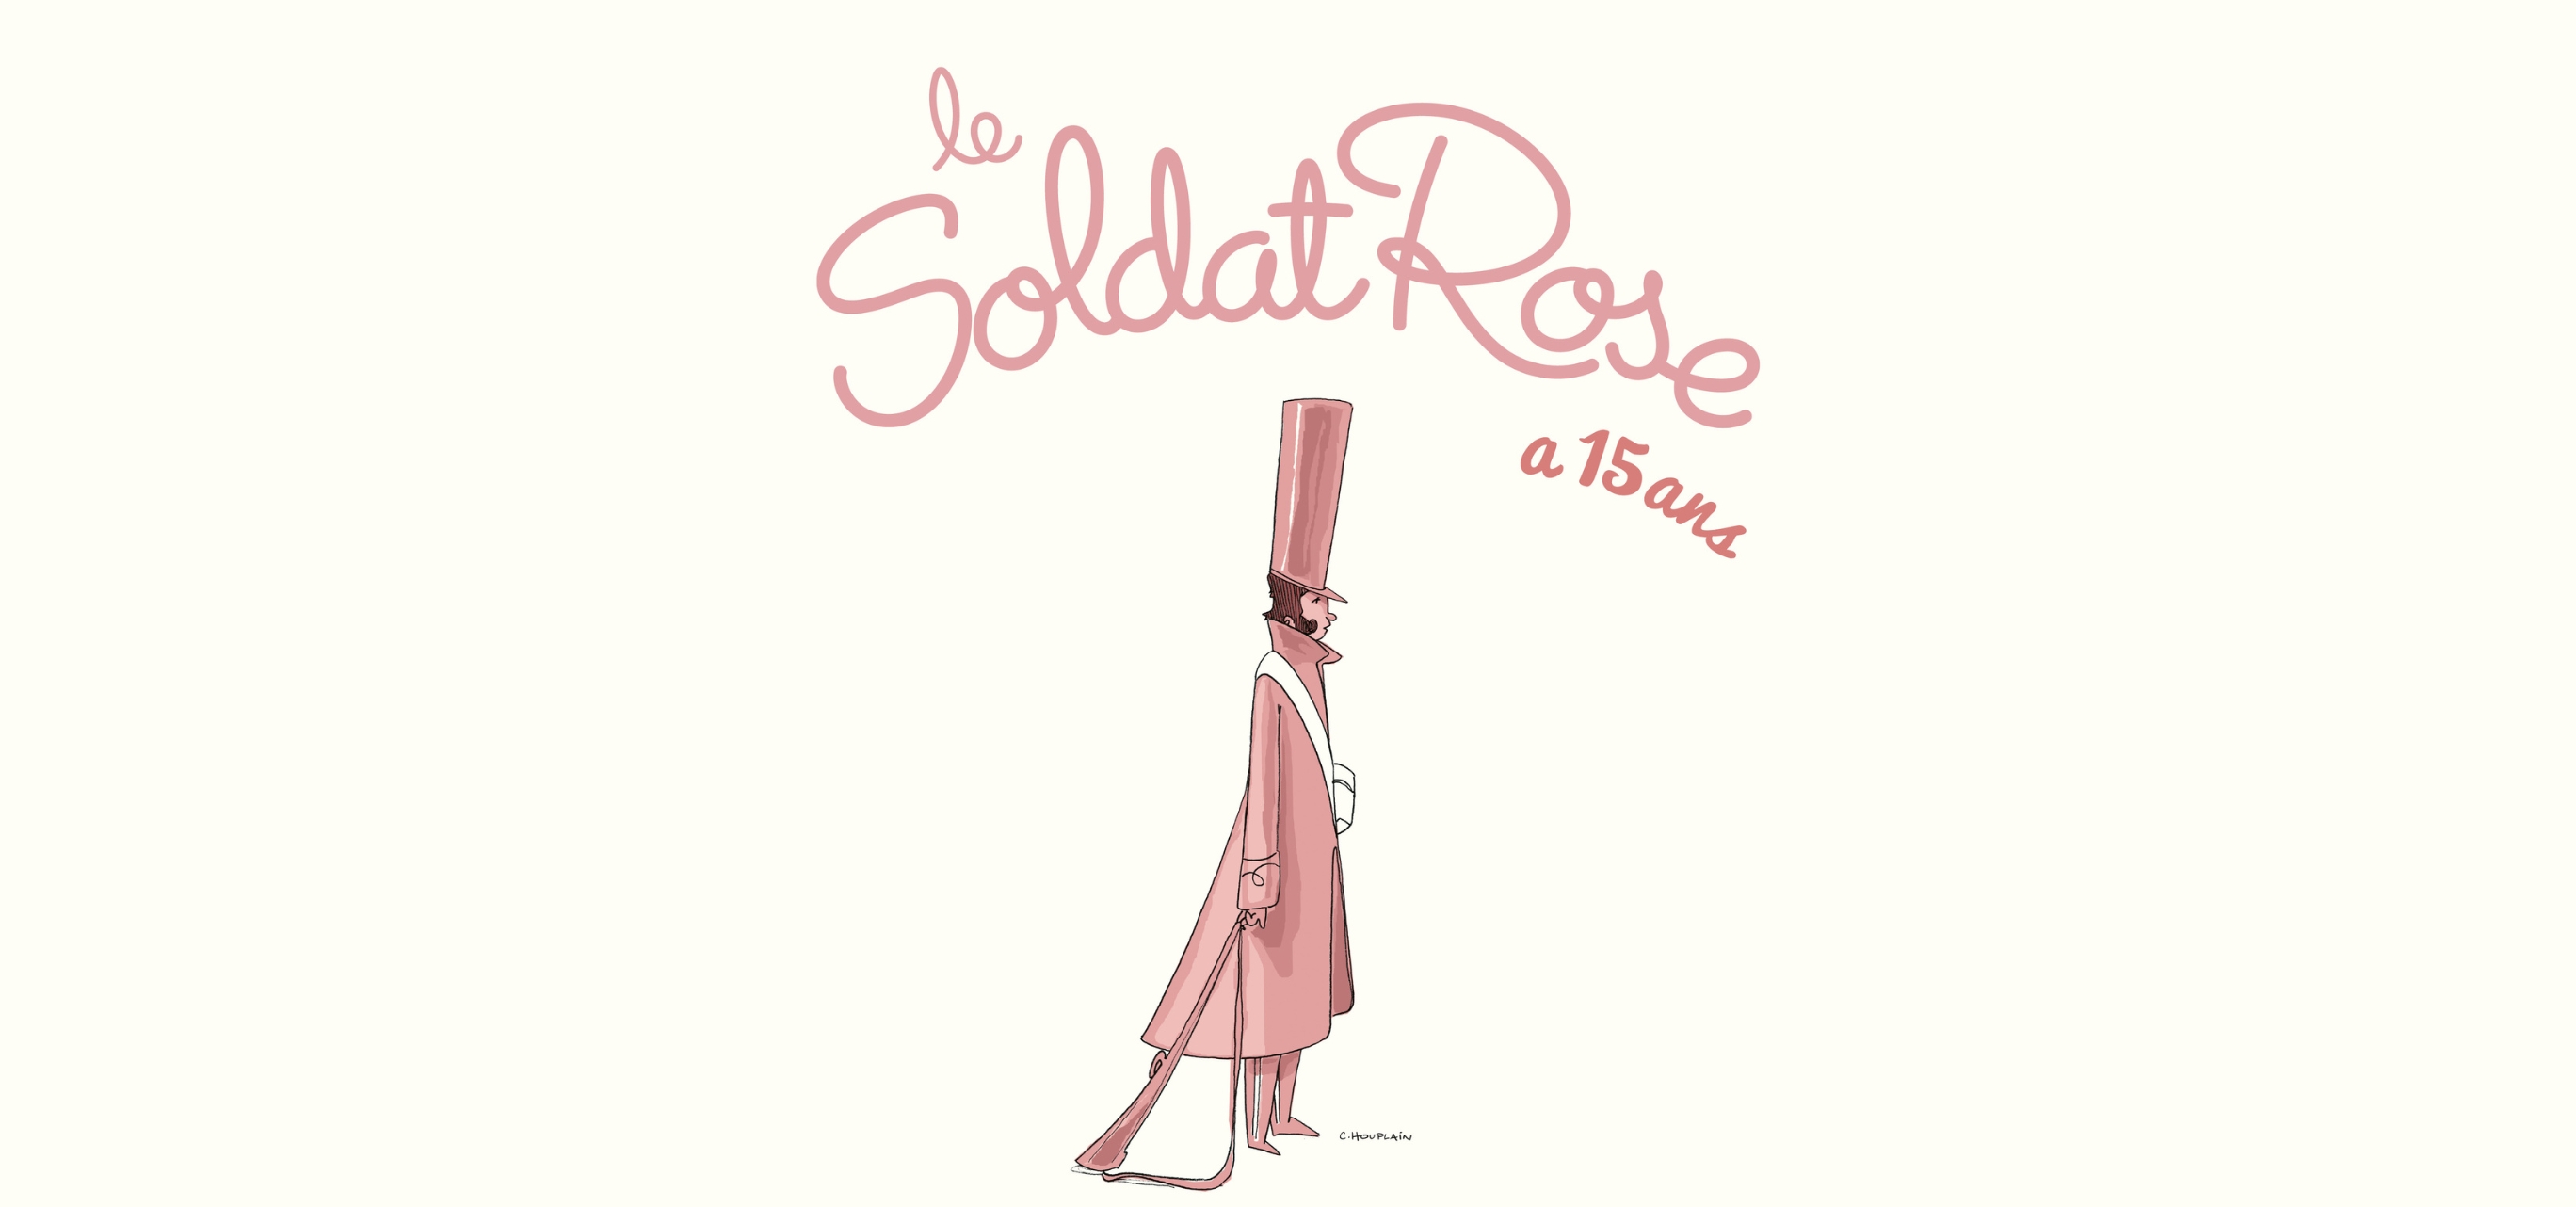 Le Soldat Rose